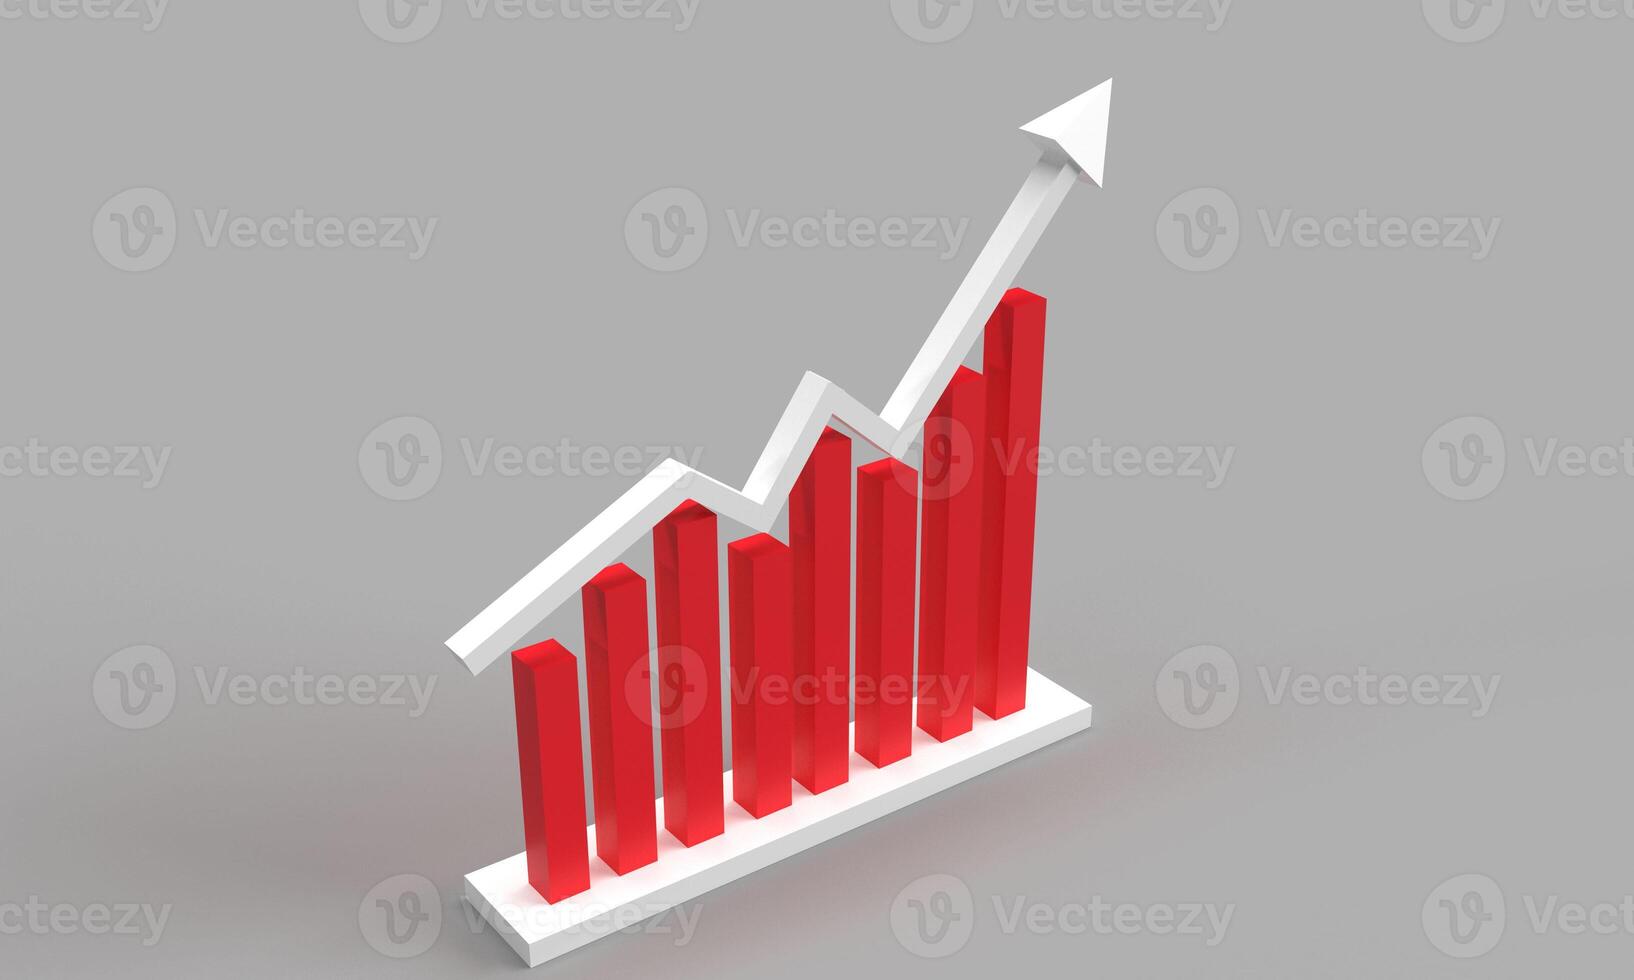 estoque vermelho Rosa laranja cor gráfico gráfico o negócio investimento crescimento acima dado moeda mercado diagrama economia conceito forex análise comércio troca dinheiro comércio preço estratégia castiçal suporte Comprar vender foto